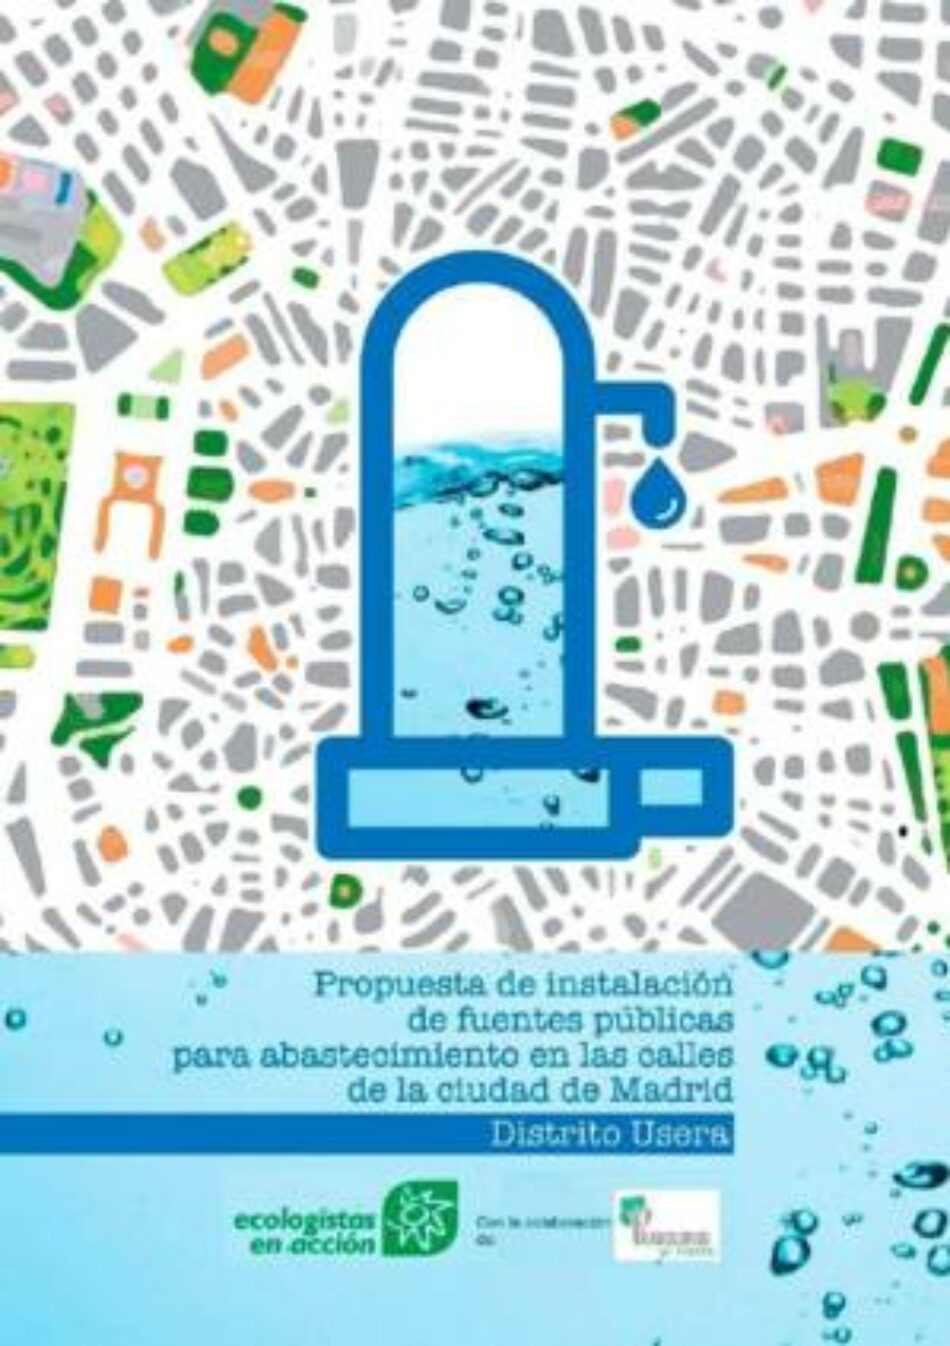 Una propuesta para tener más de 100 fuentes para beber en el distrito de Usera de Madrid